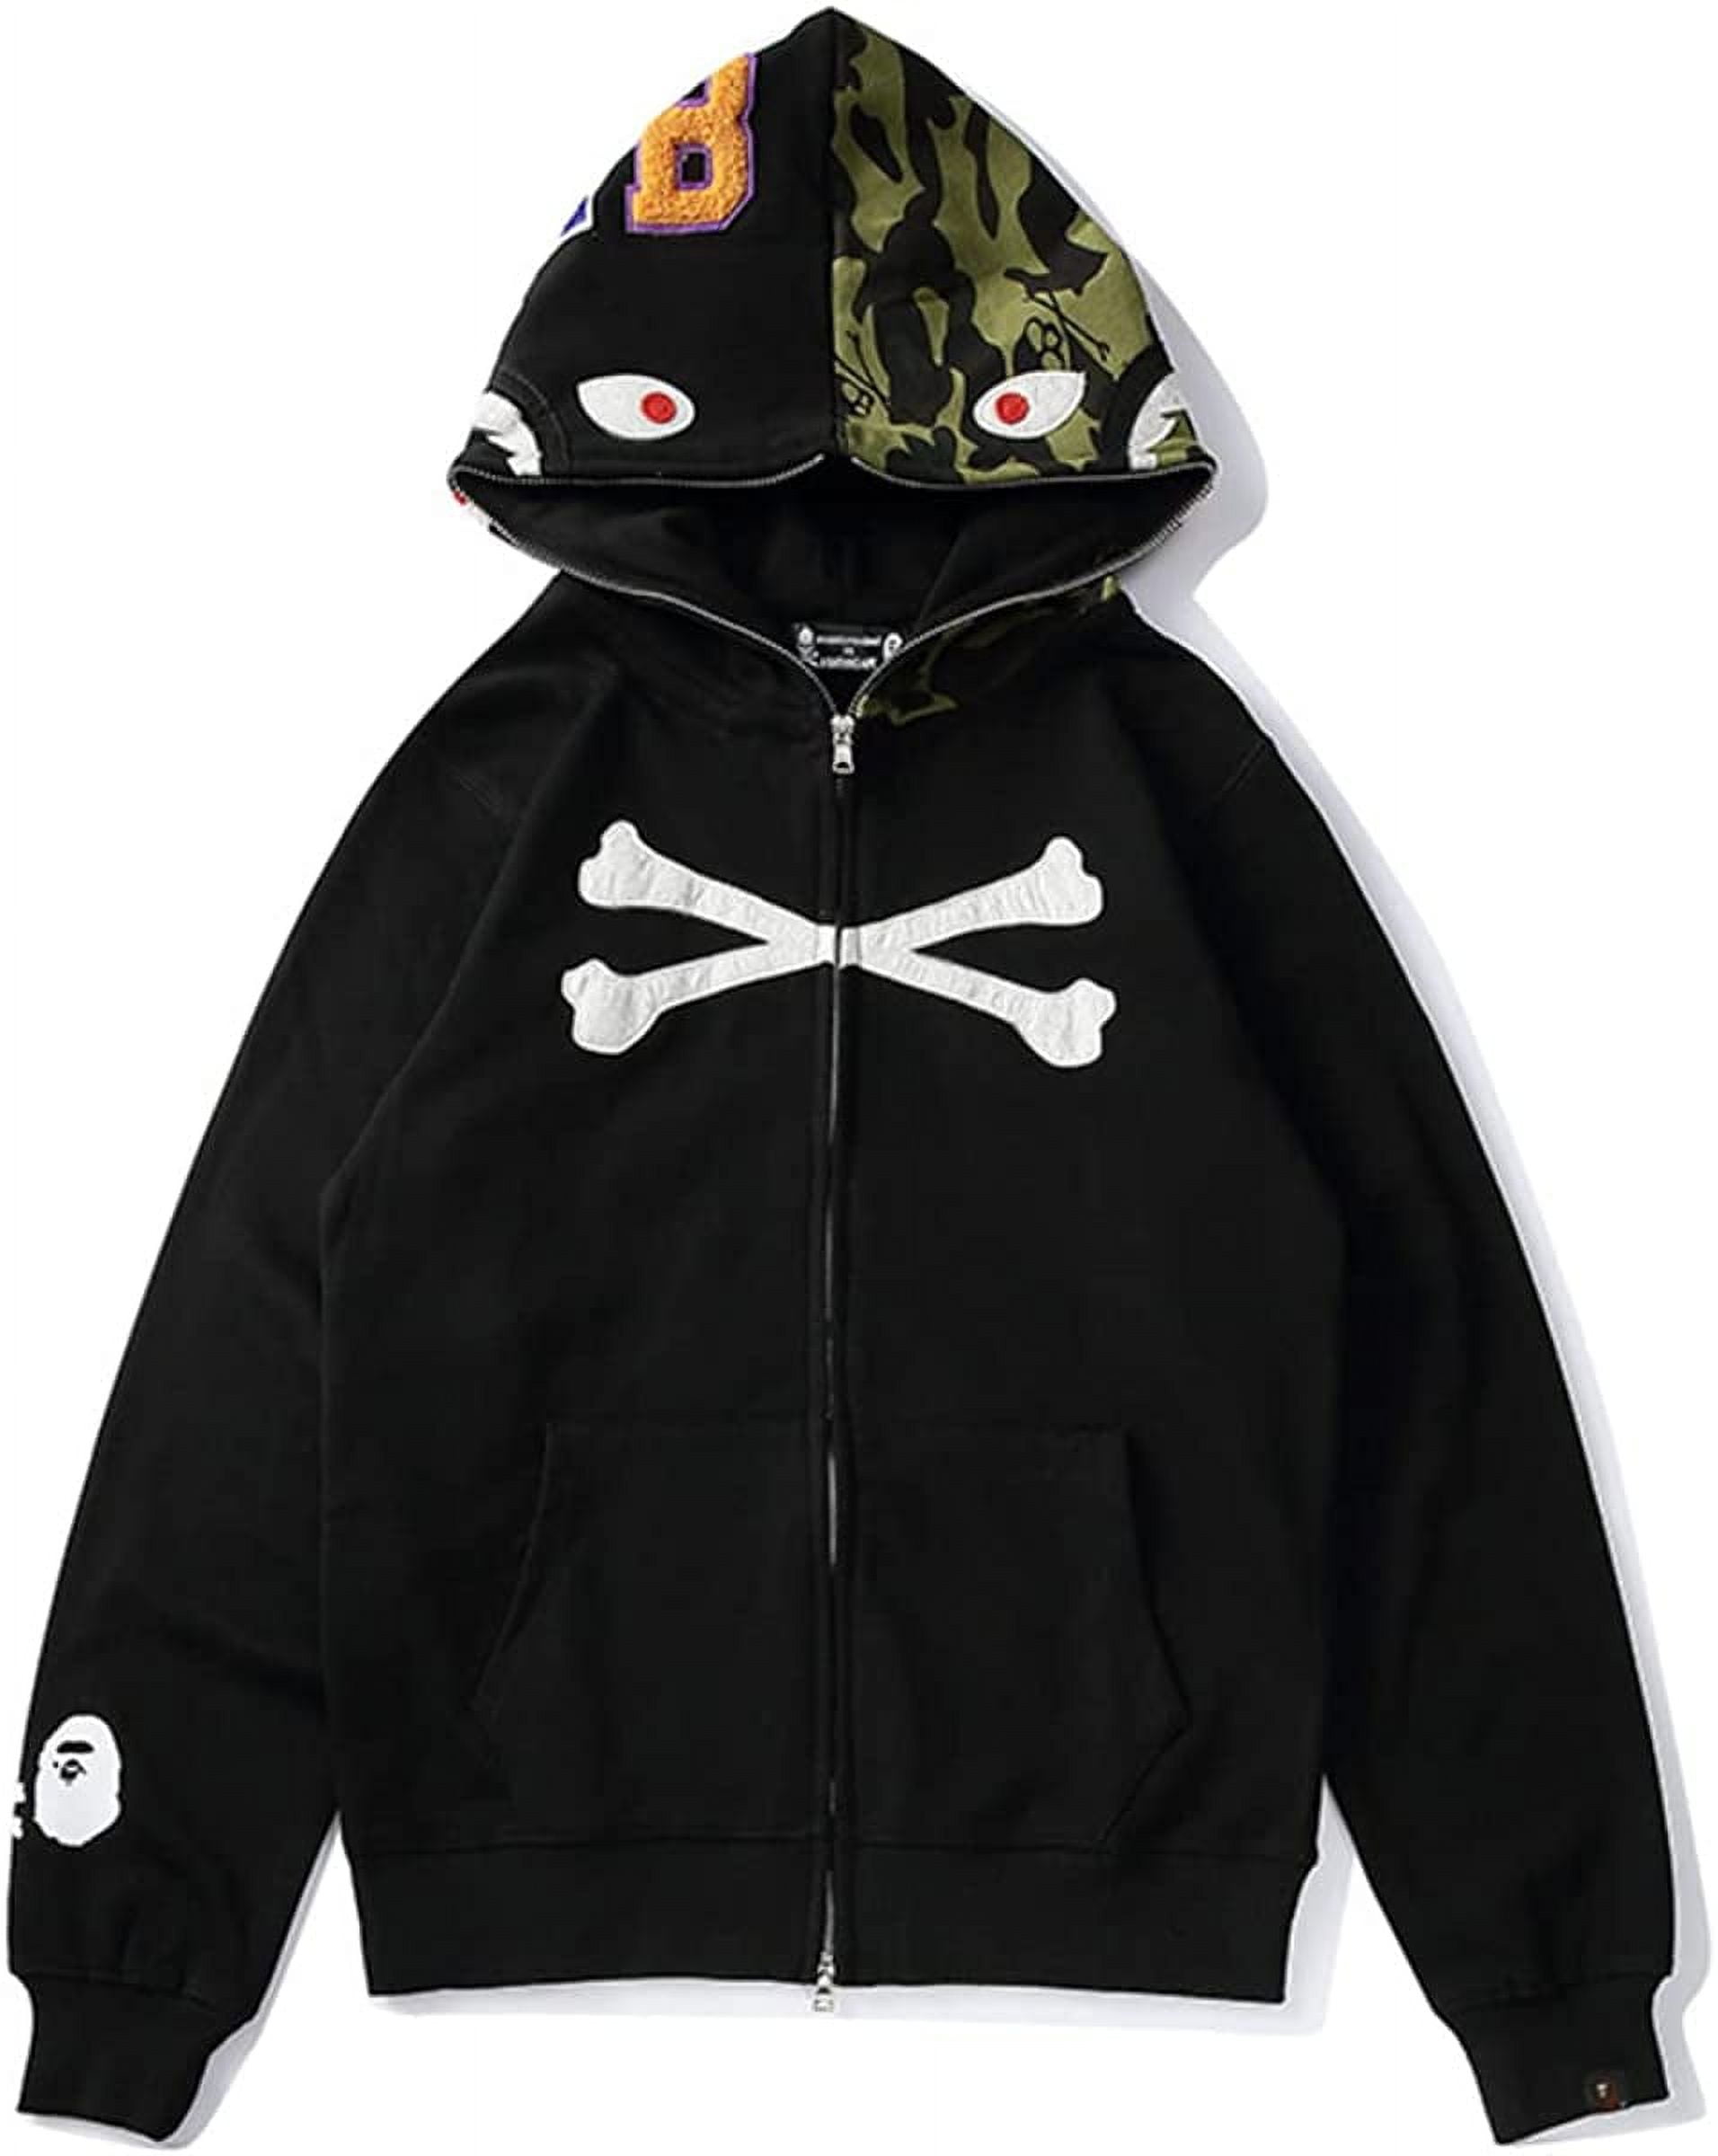 Bape Hoodie Full Zip Shark Camo Head Jacket Hip Hop Tops Ape Coat for ...